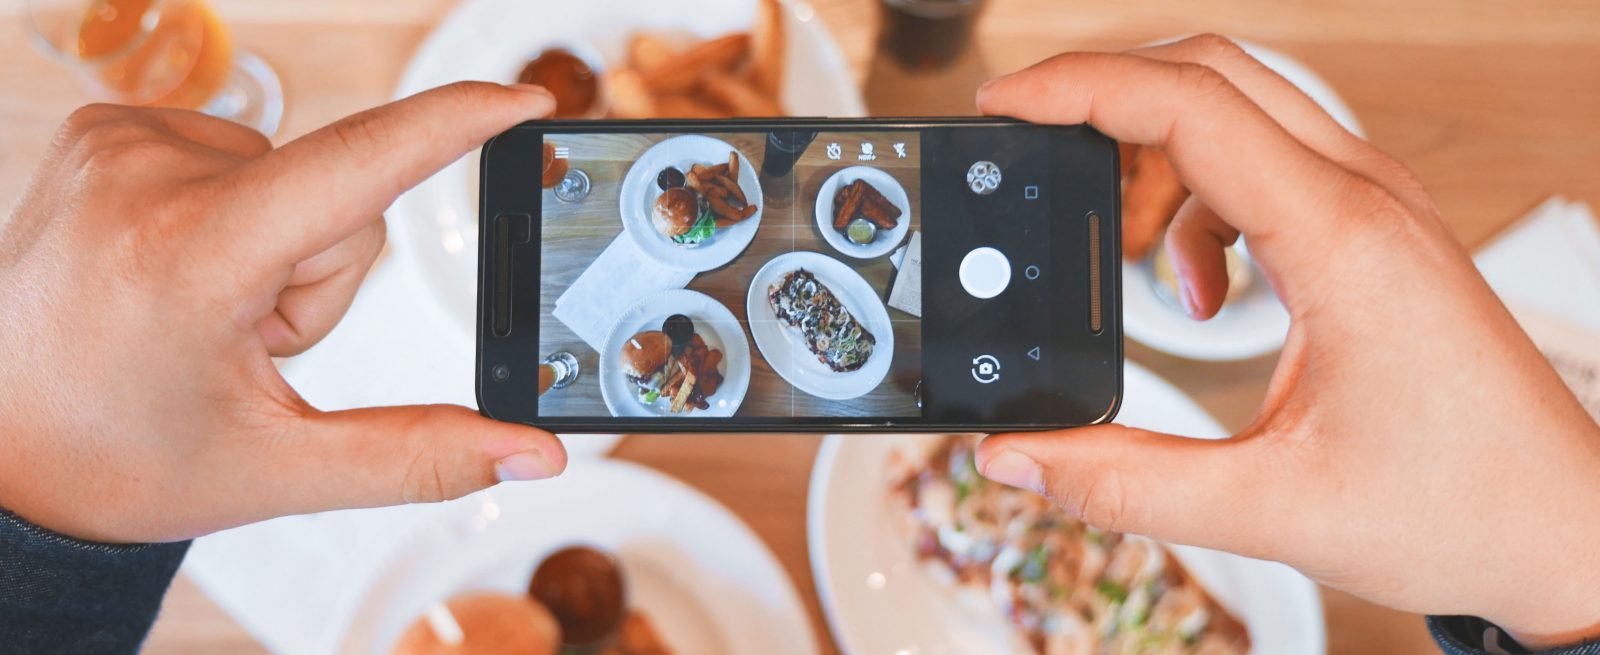 10 Social Media Marketing Tips for Restaurants | Modern Restaurant  Management | The Business of Eating &amp; Restaurant Management News